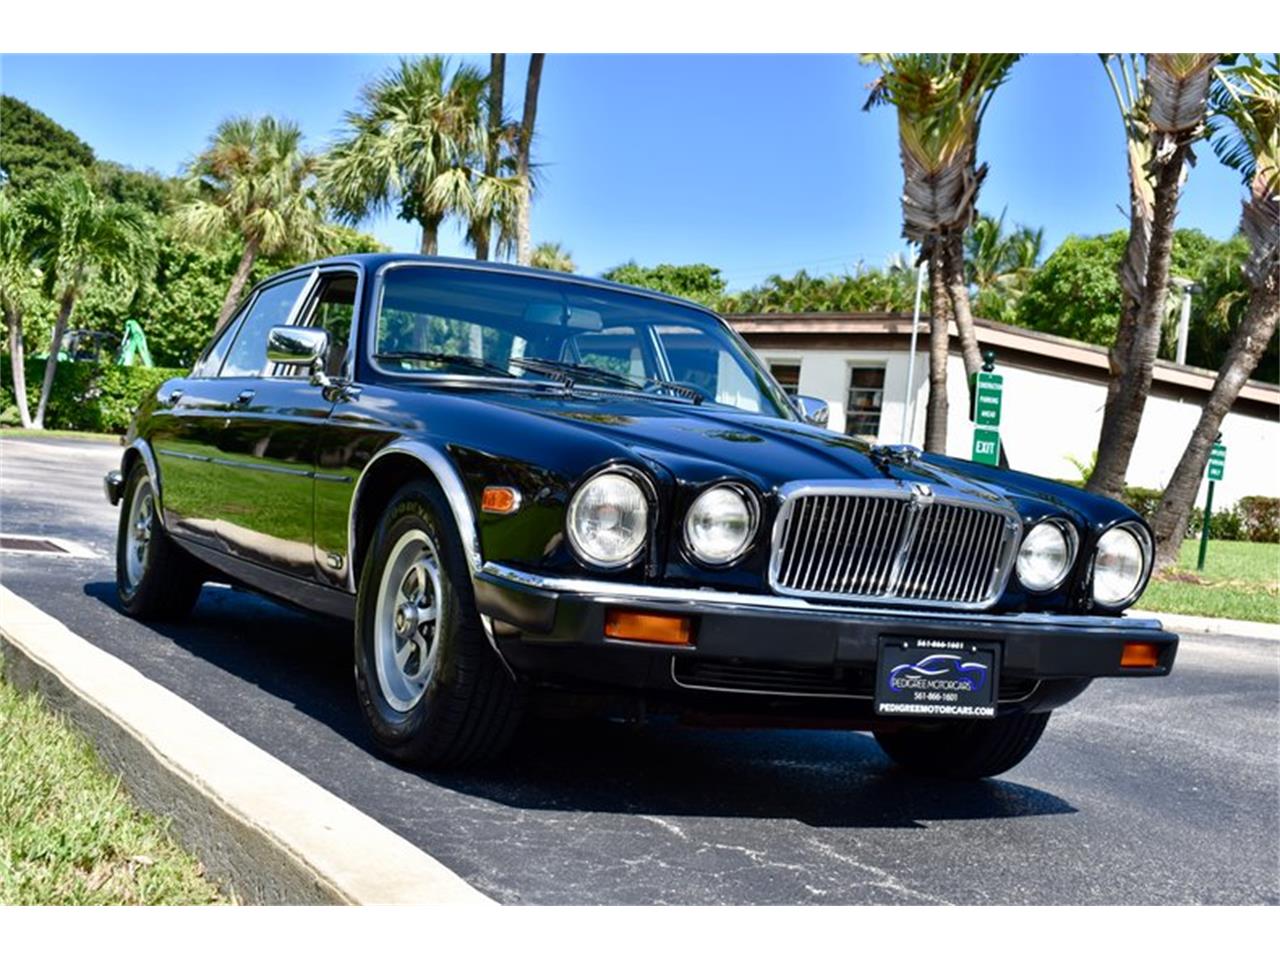 1987 Jaguar XJ12 for sale in Delray Beach, FL ...